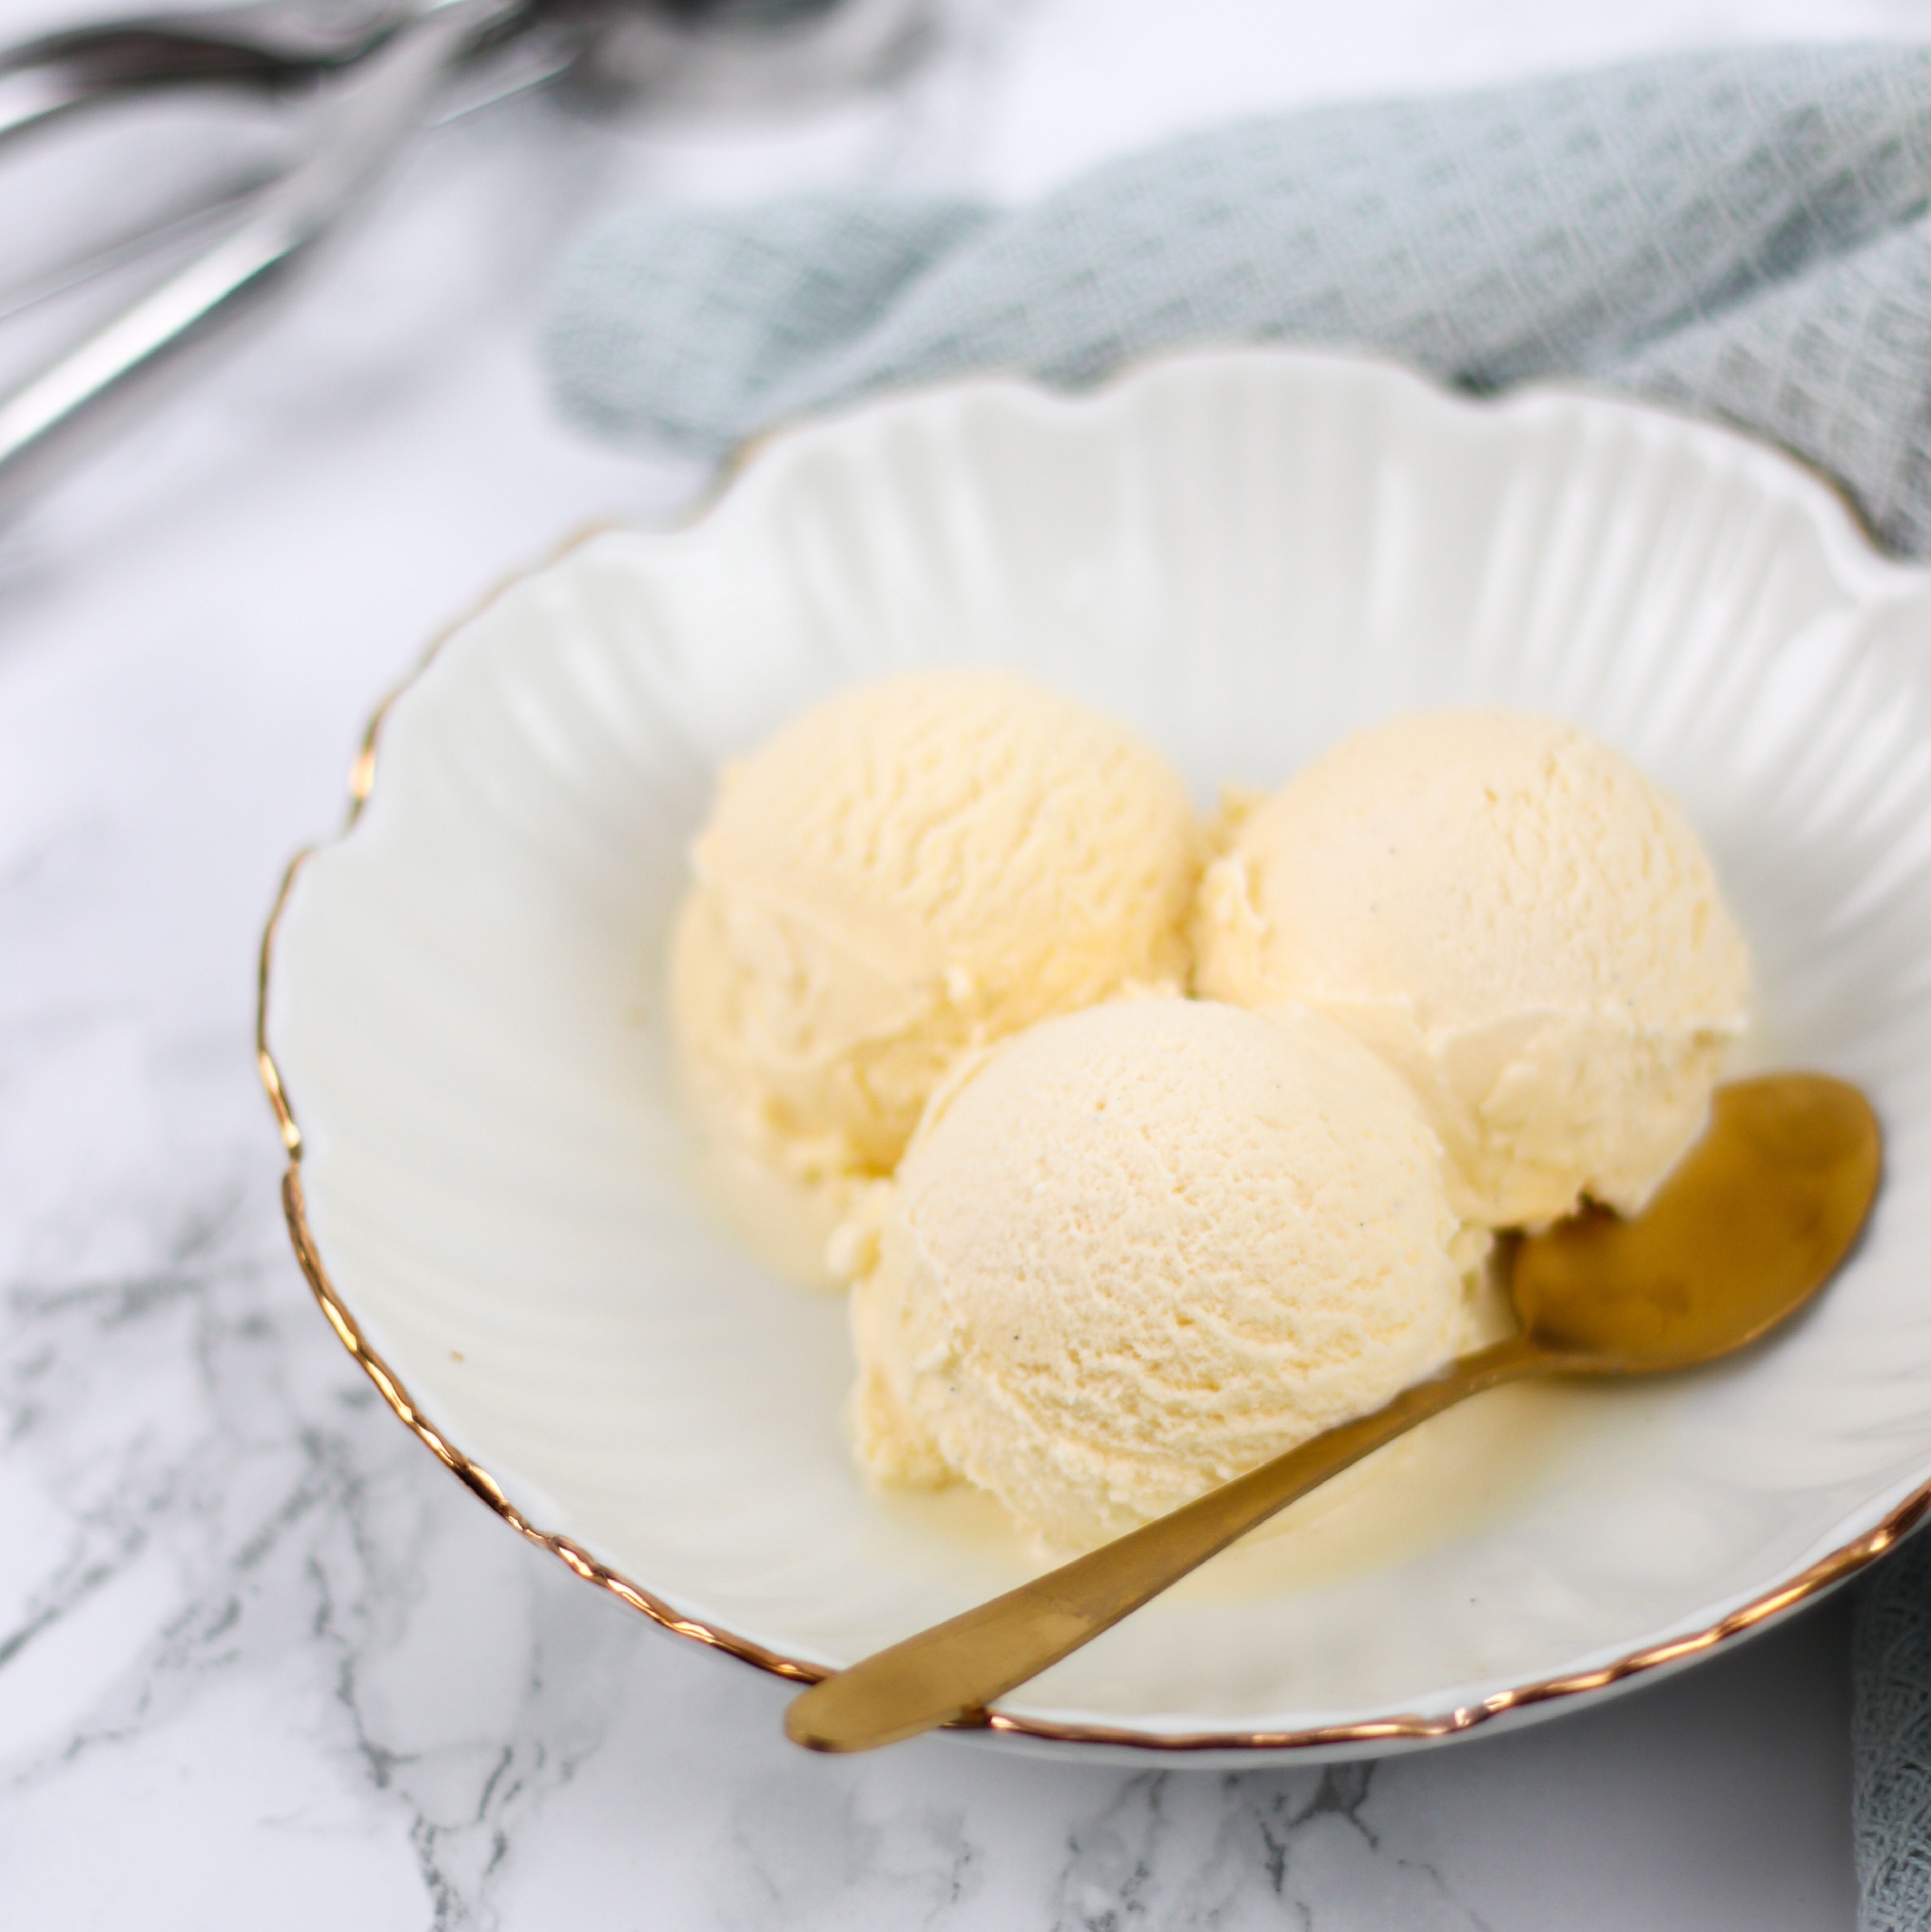 Verplicht gen koper Basisrecept vanille roomijs met de ijsmachine - Mariëlle in de Keuken